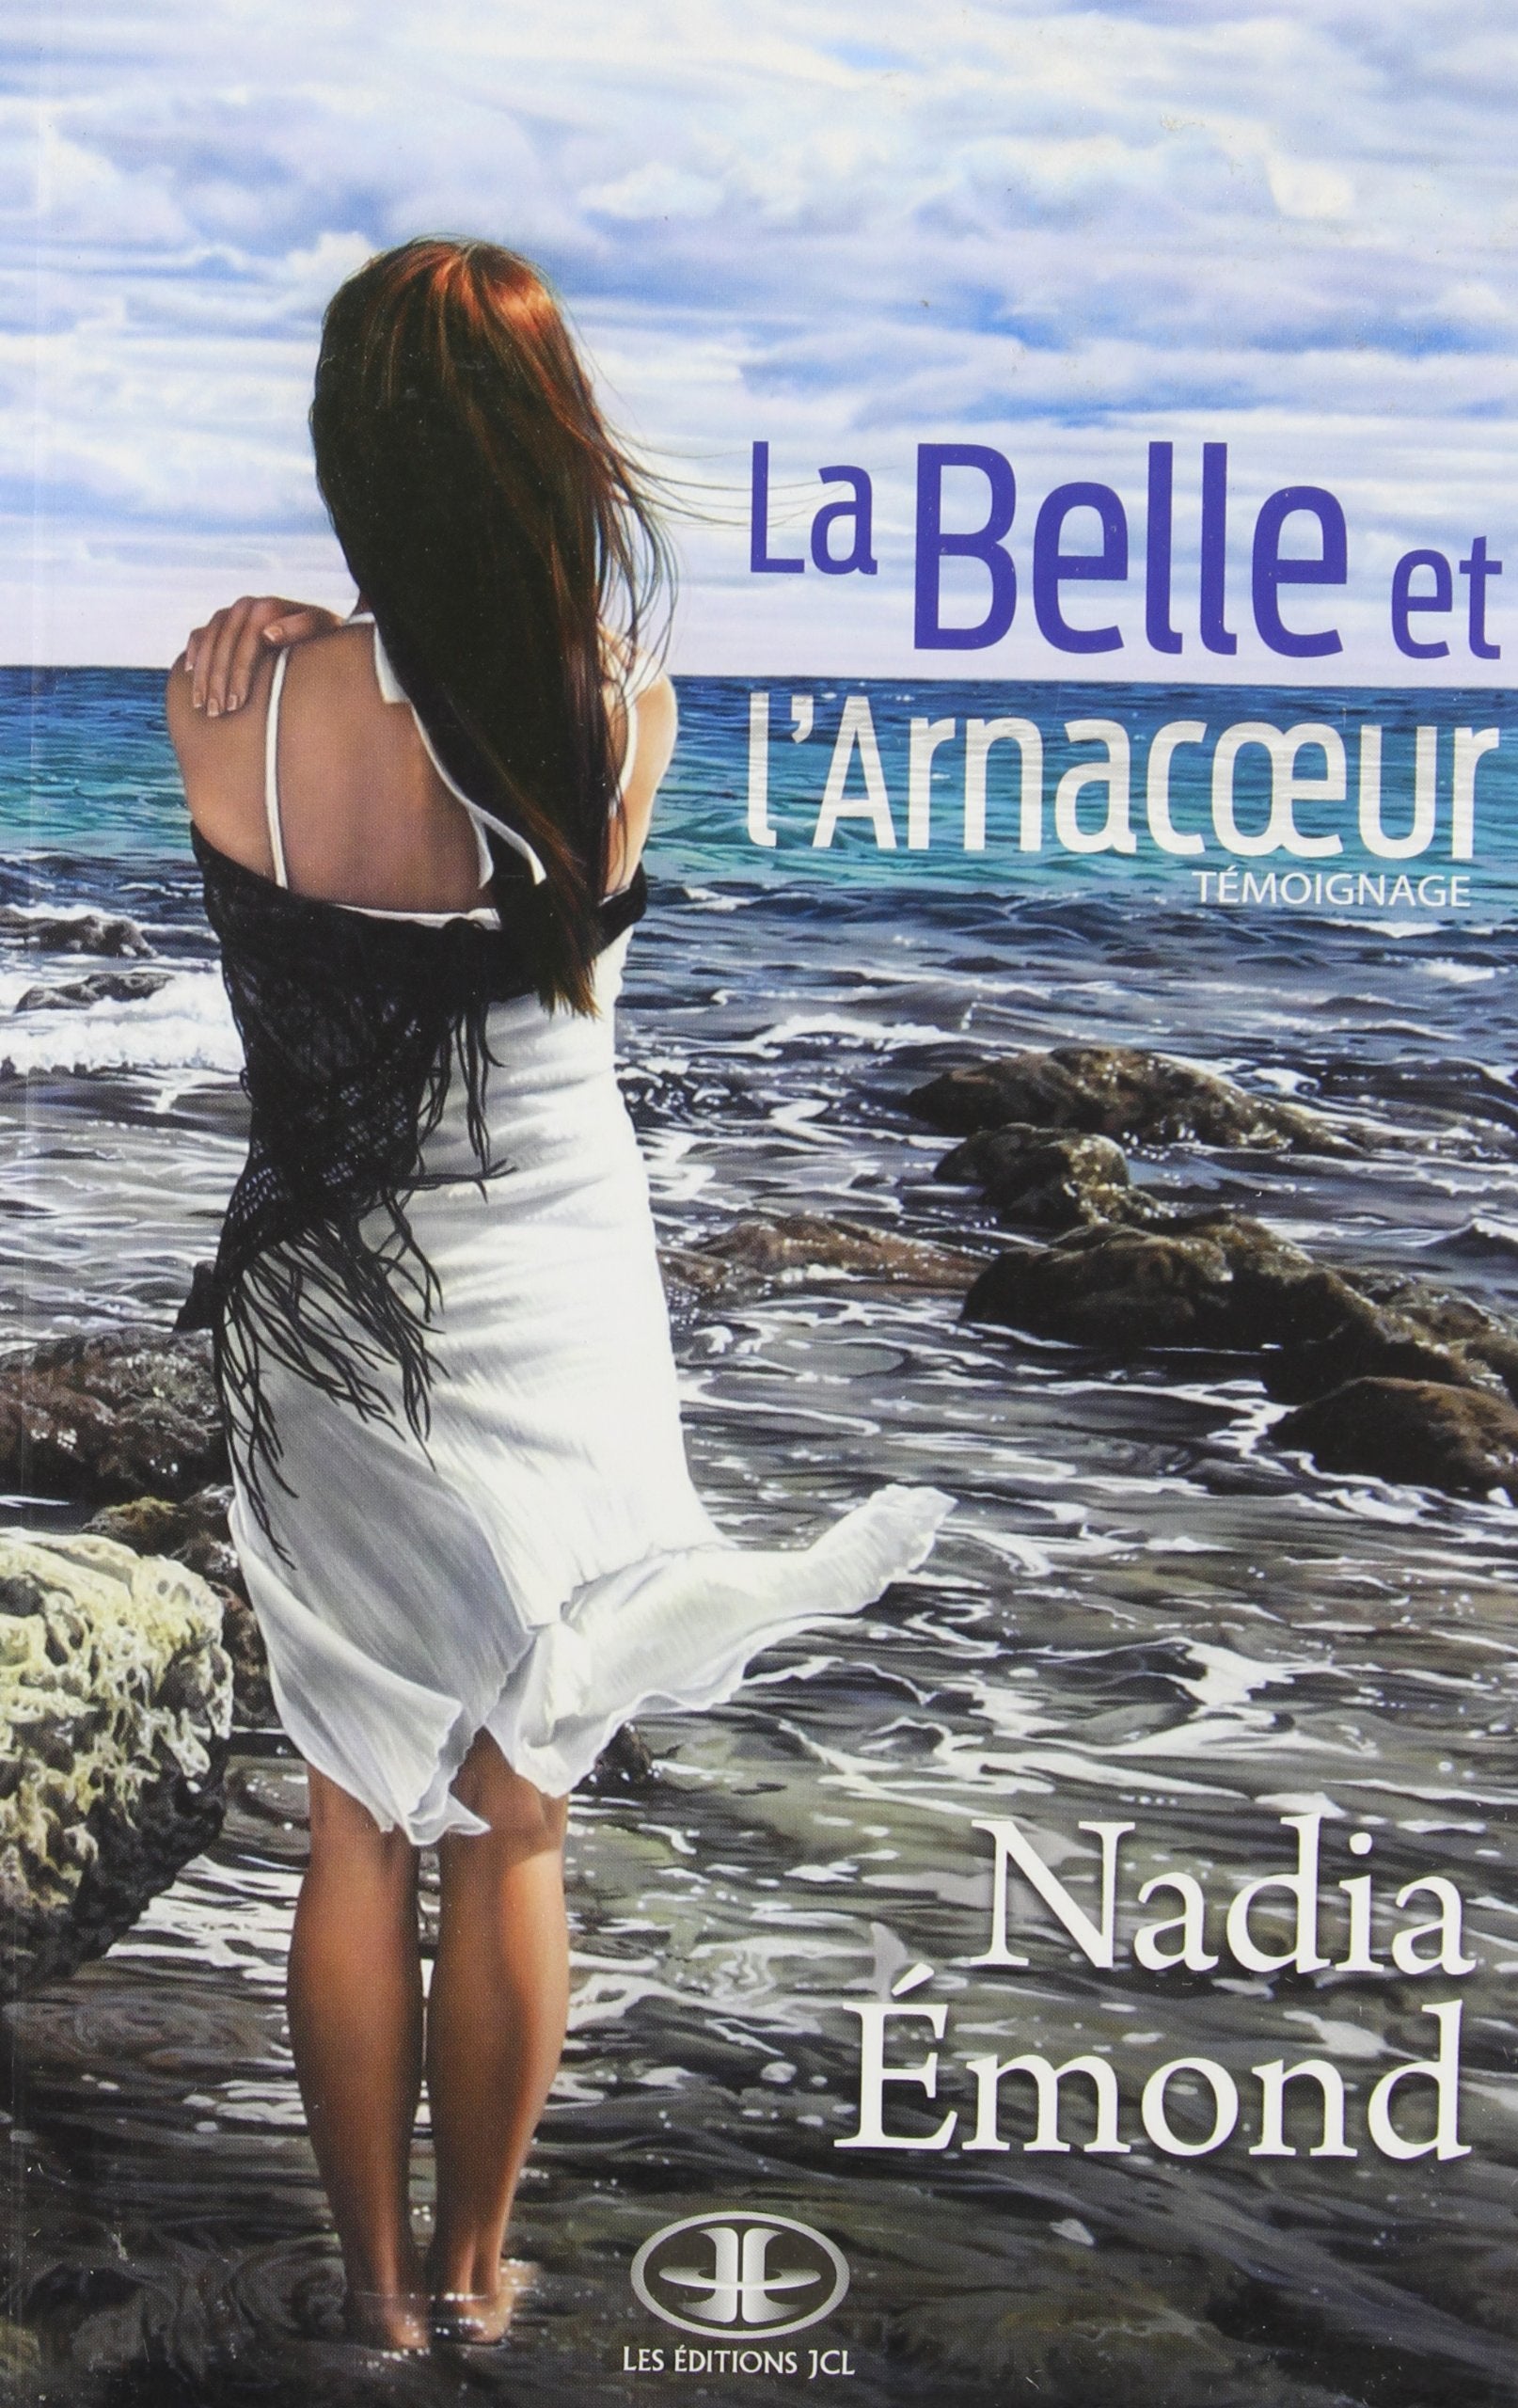 Livre ISBN 289431454X La belle et l'arnacœur : Témoignage (Nadia Emond)